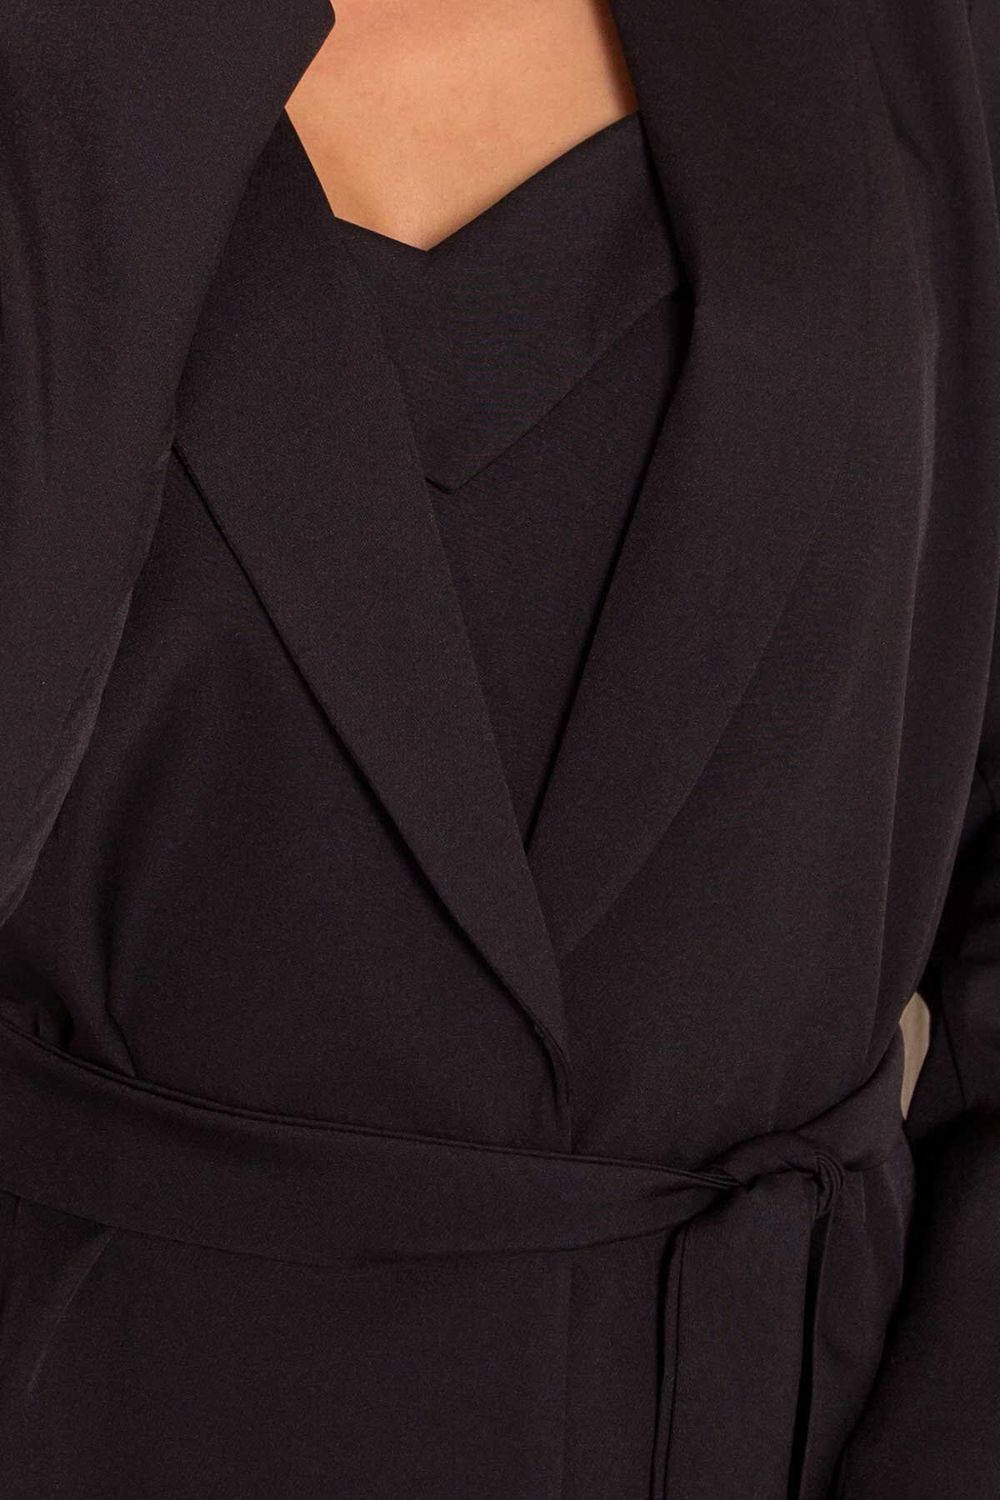 Жіночий діловий костюм зі спідницею чорний - фото